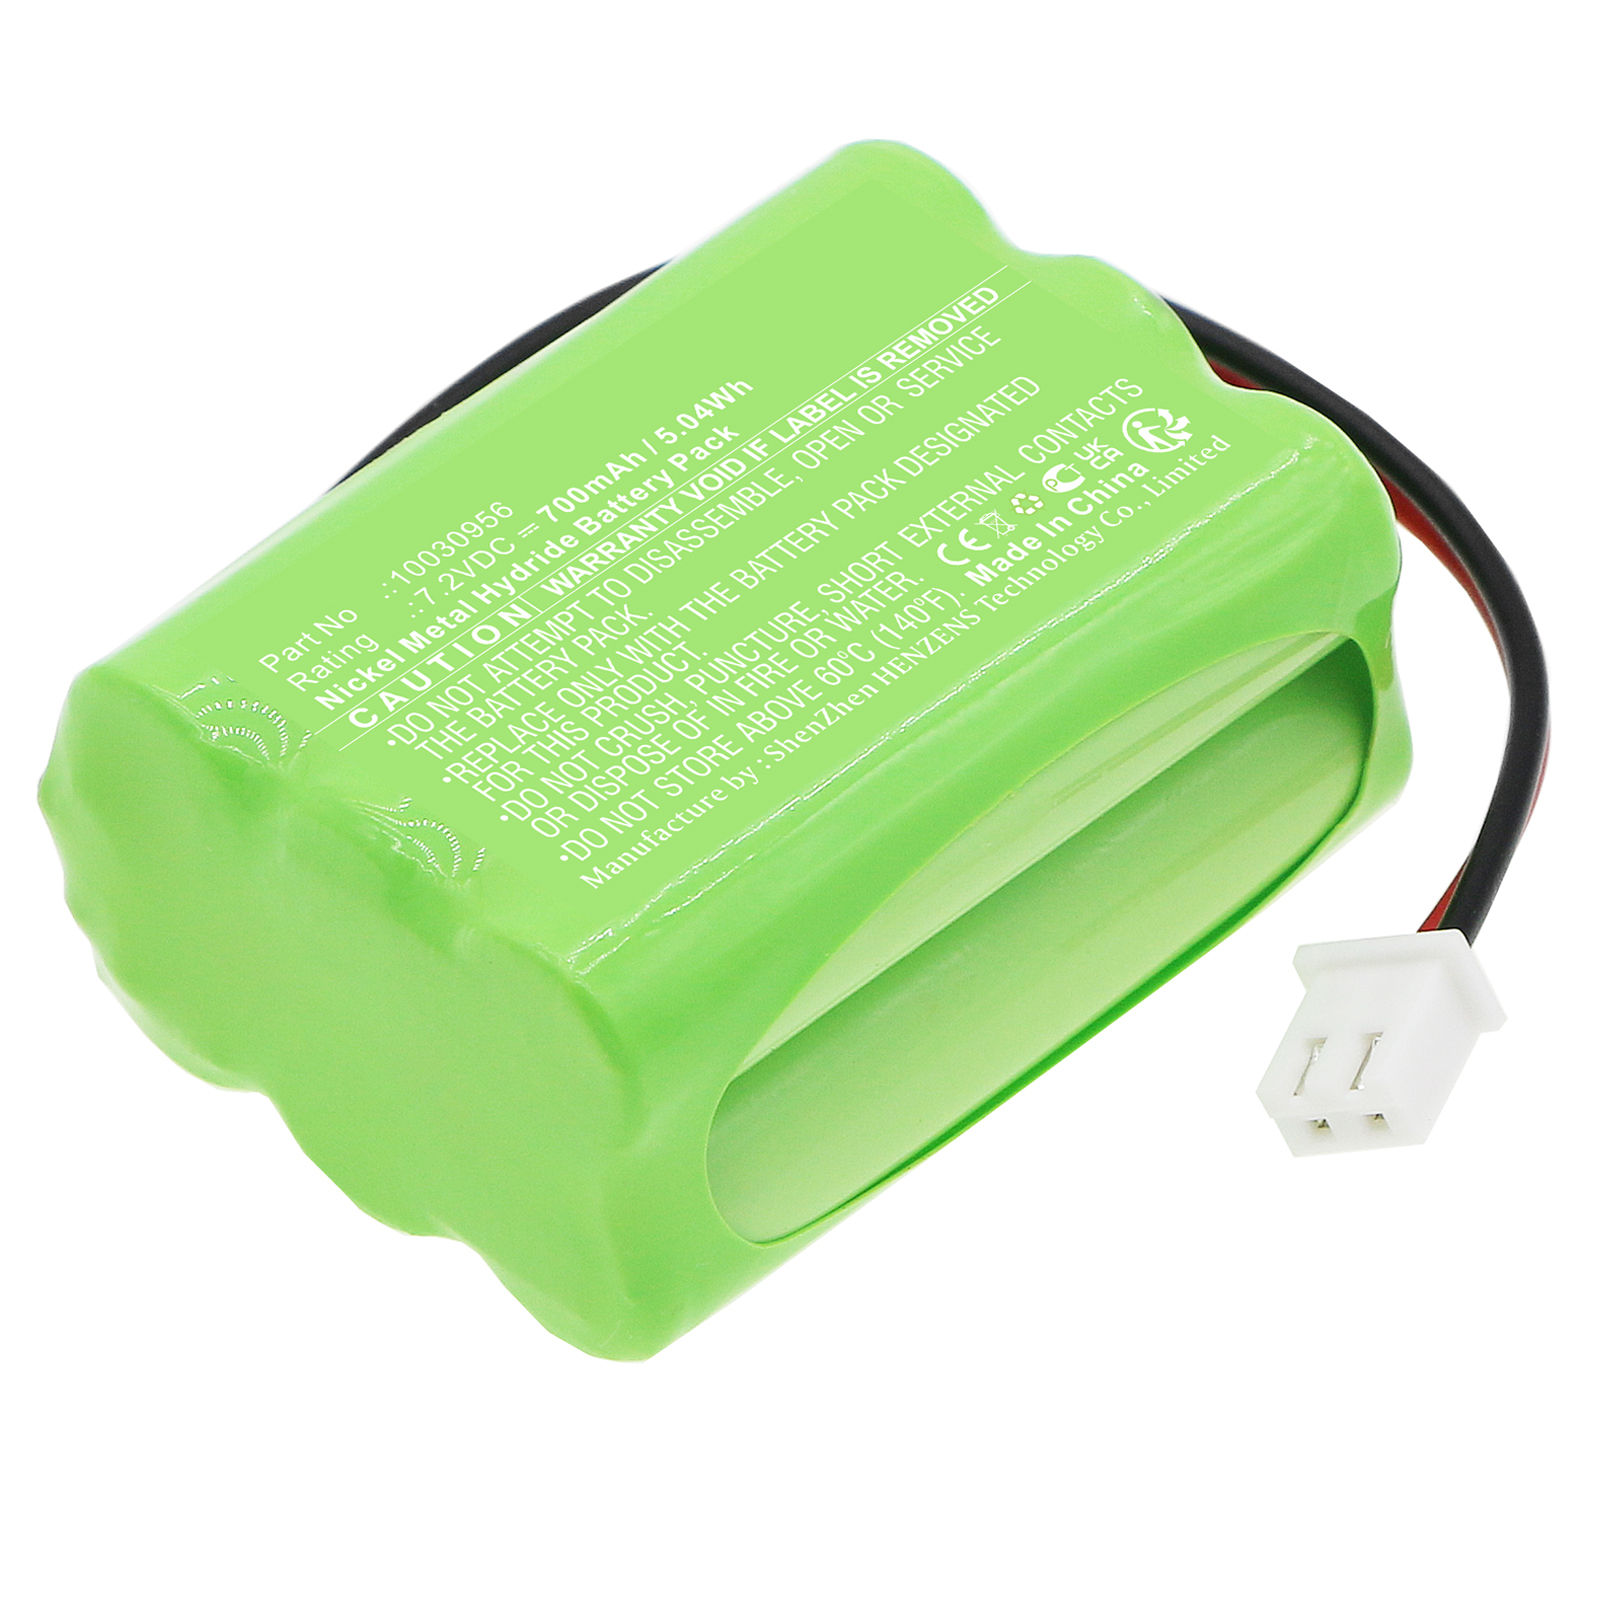 Synergy Digital Emergency Lighting Battery, Compatible with ESYLUX 10030956 Emergency Lighting Battery (Ni-MH, 7.2V, 700mAh)